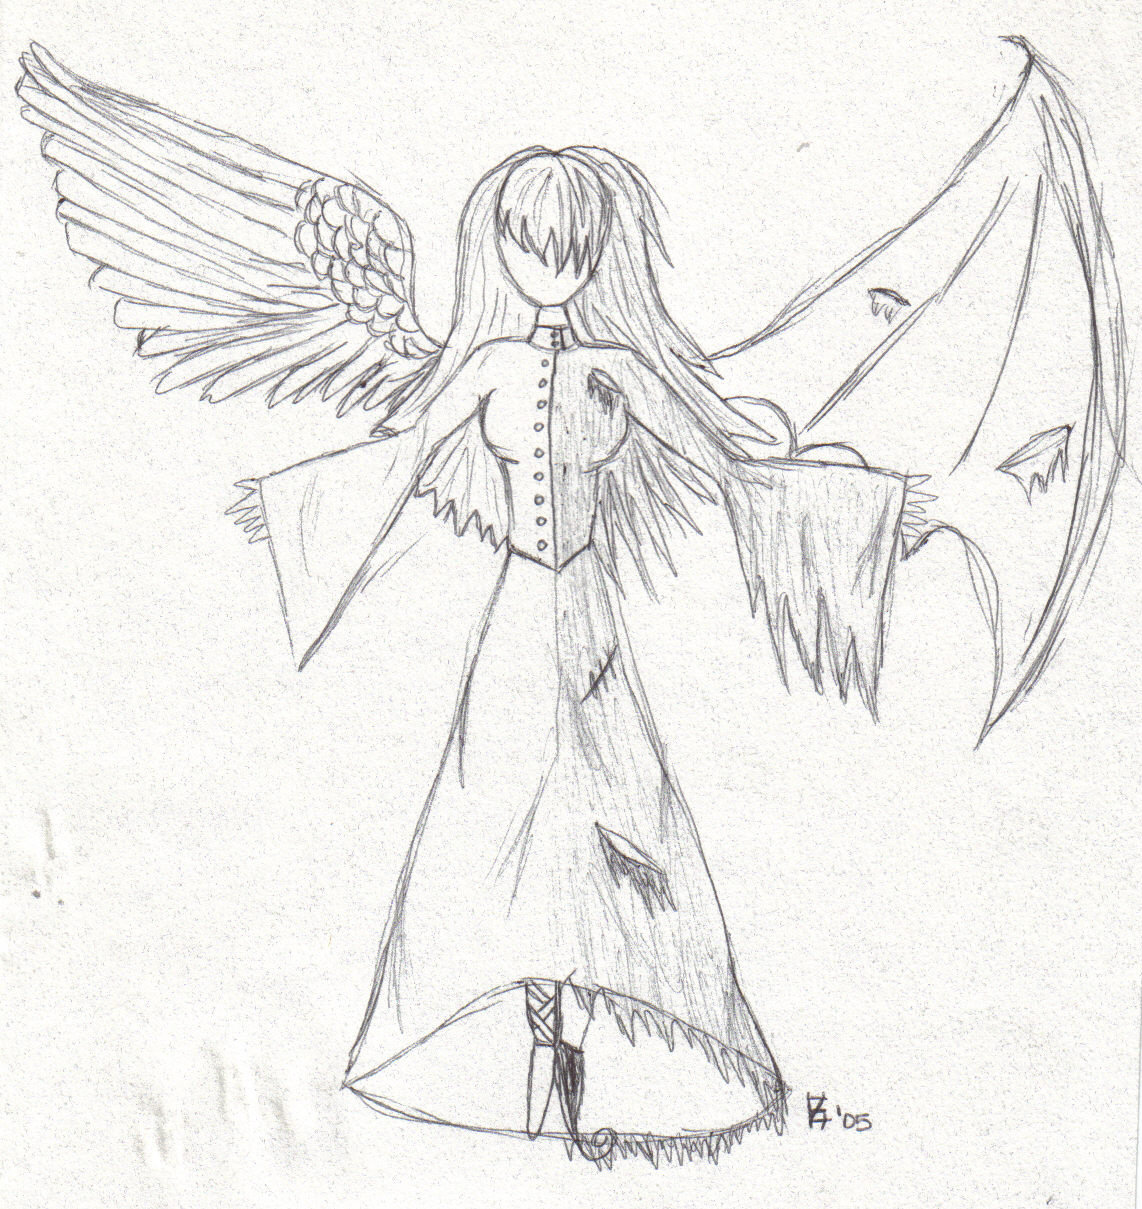 Ангел рисунок для срисовки